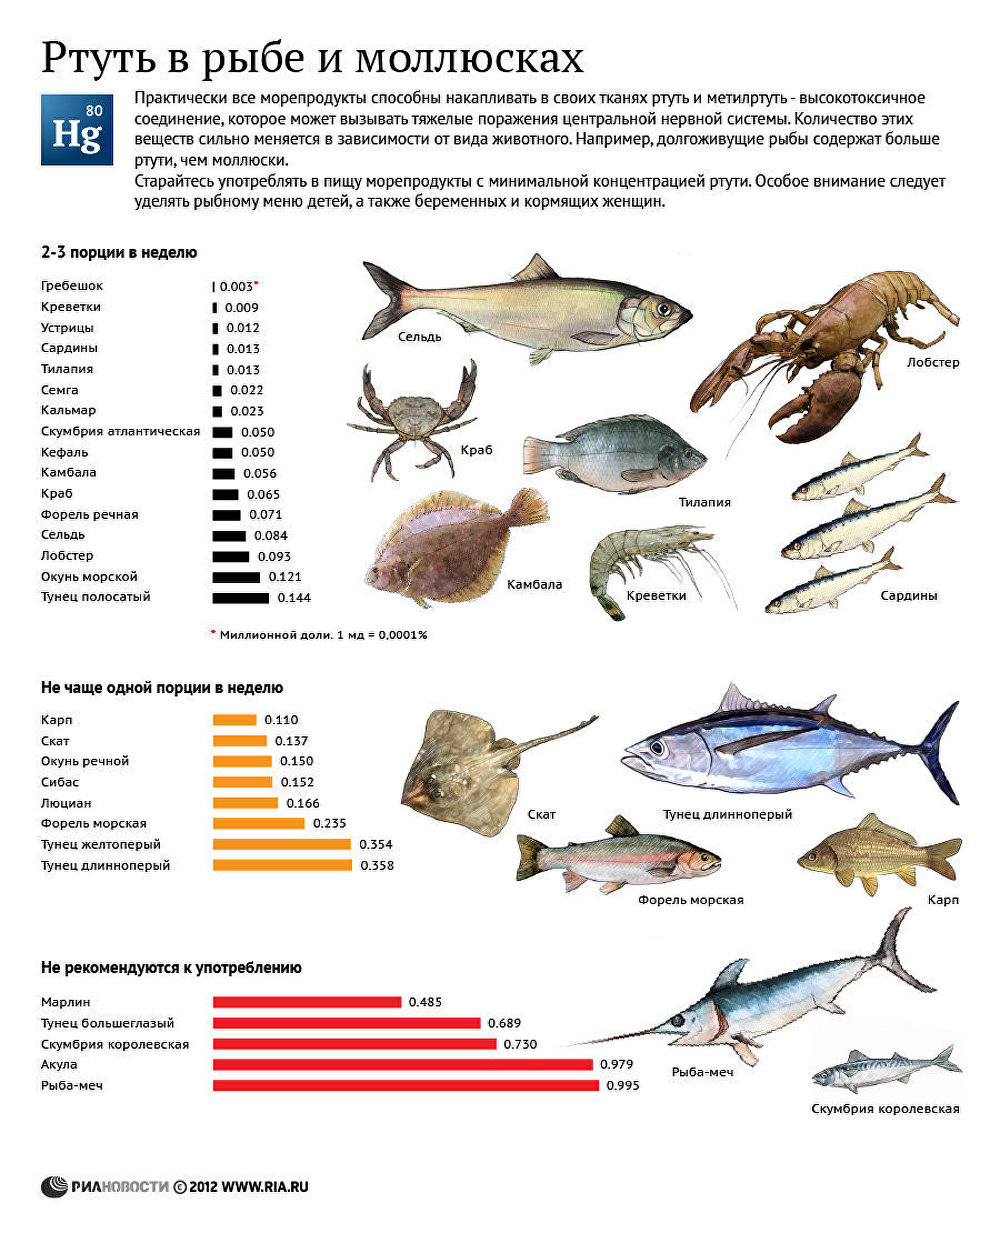 Содержание ртути в рыбе и моллюсках